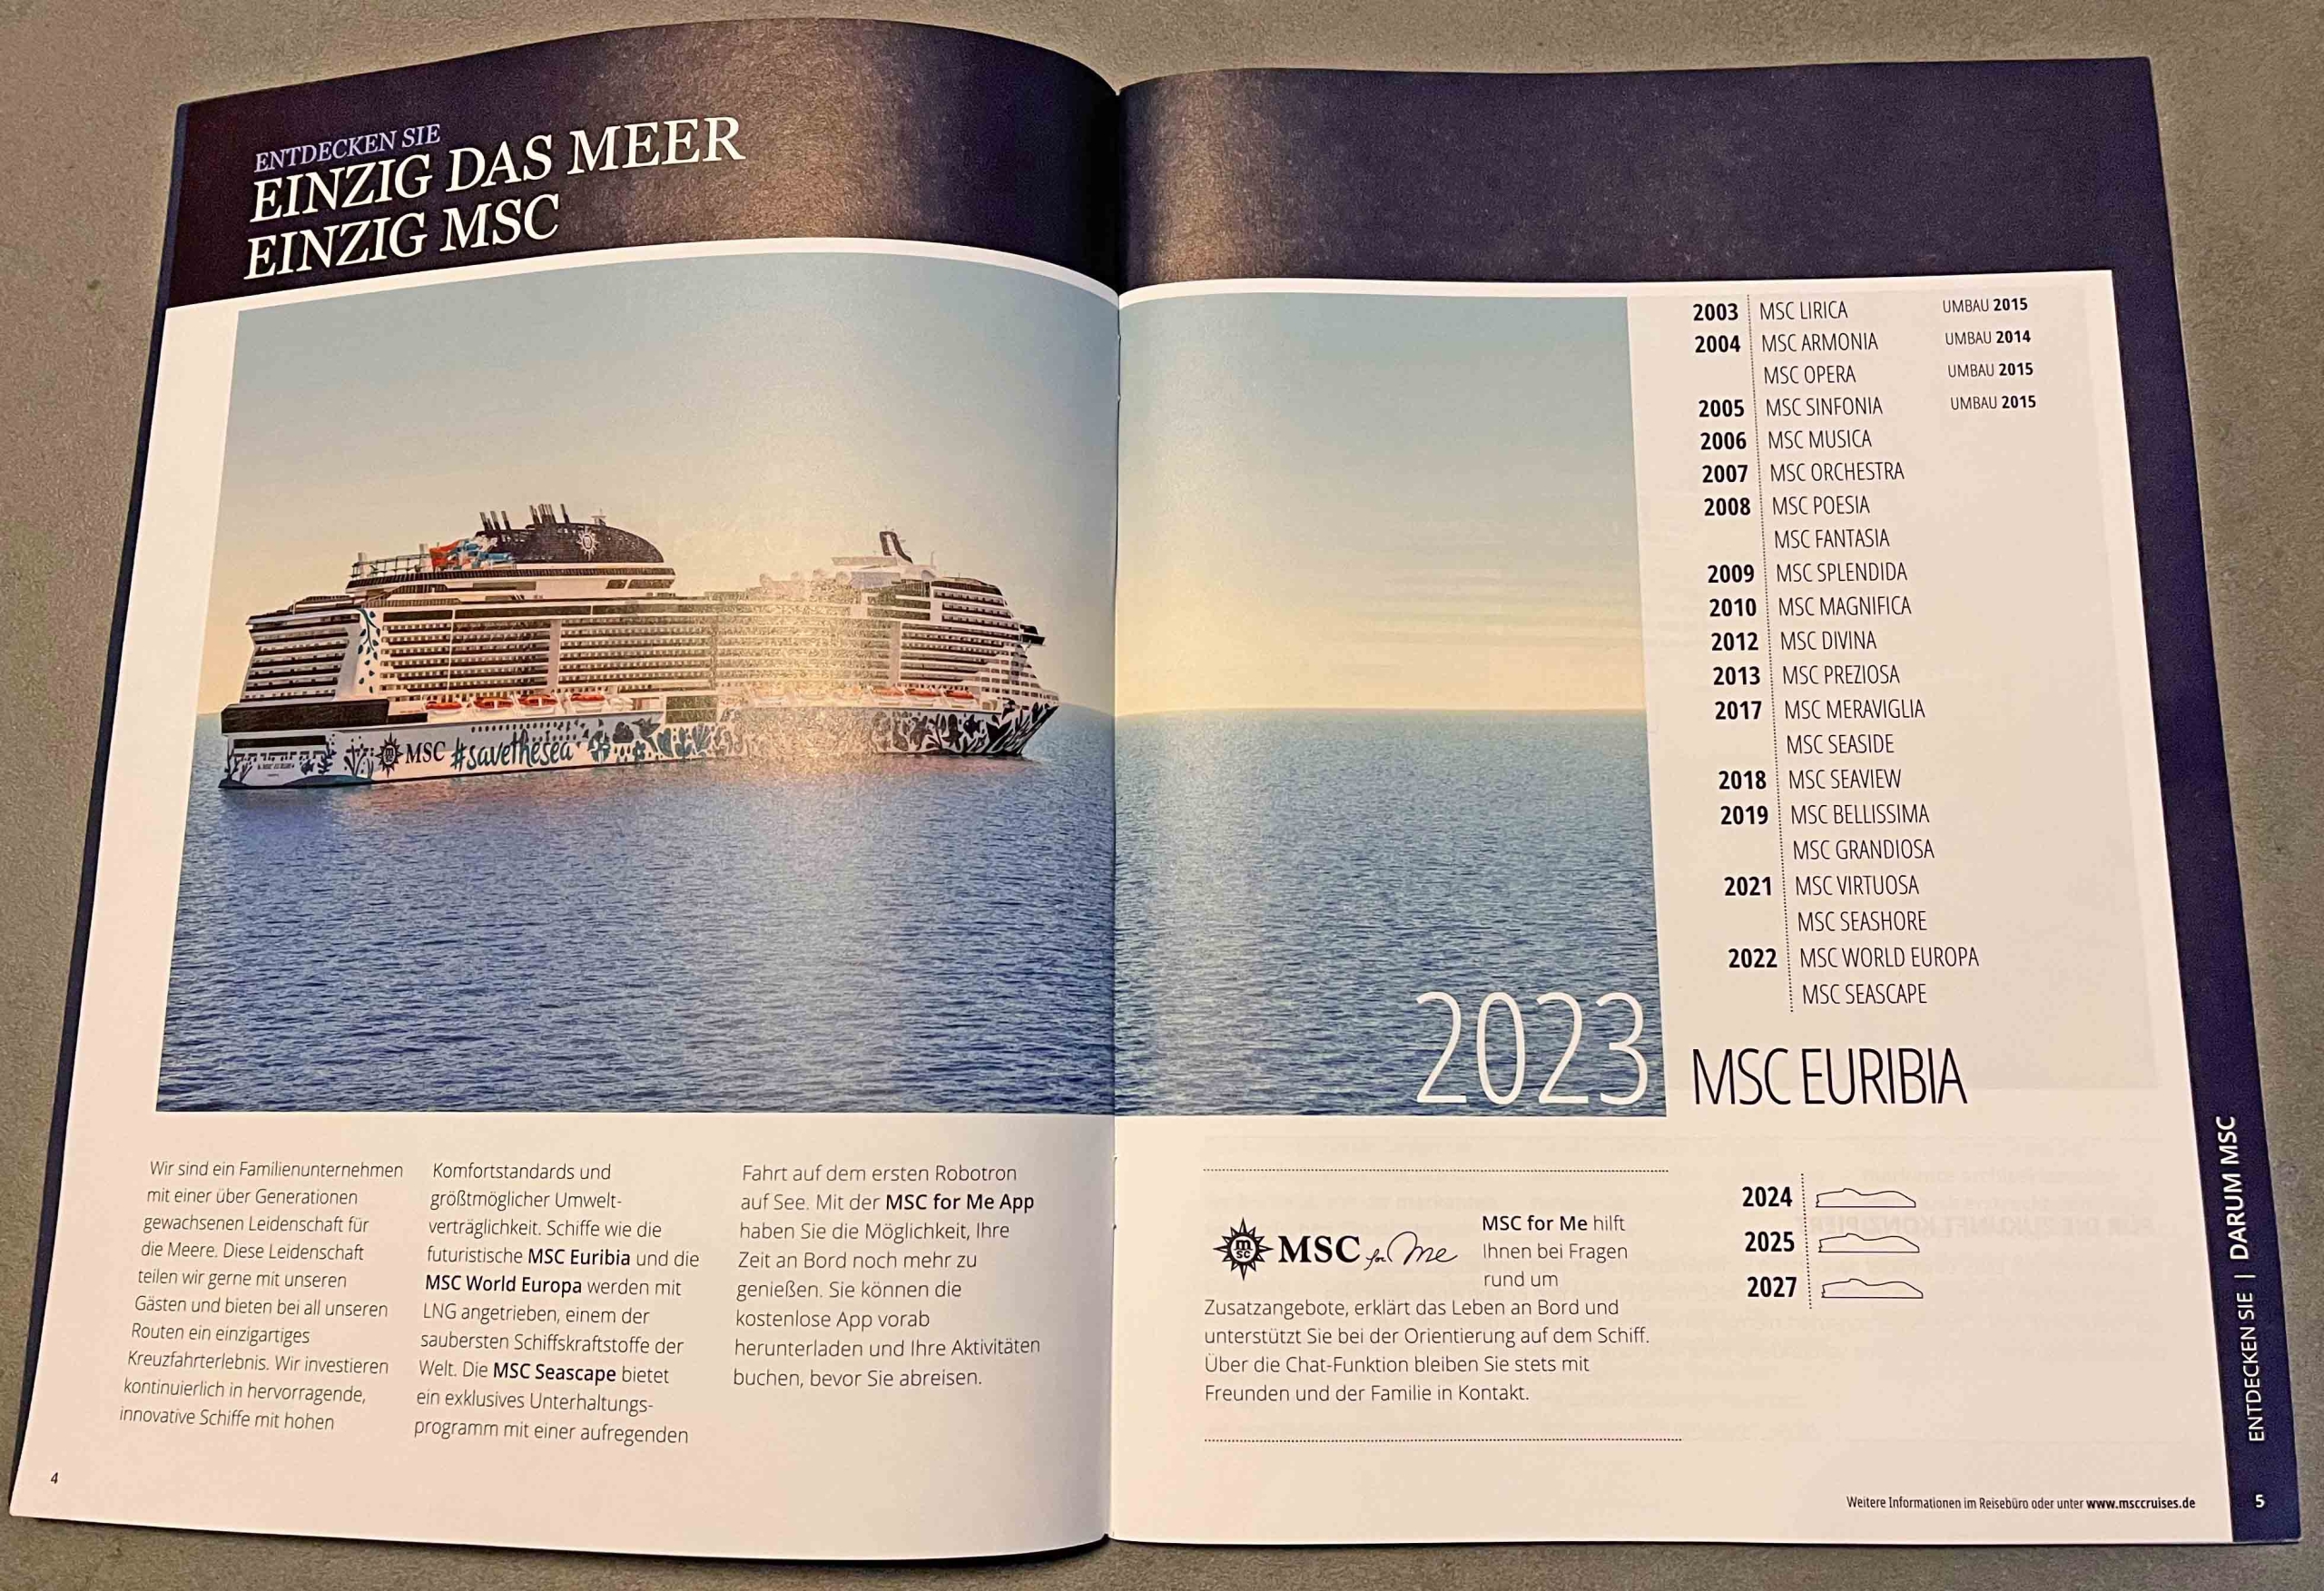 CMT Stuttgart 2023 Highlights Die Urlaubsmesse MSC Cruises